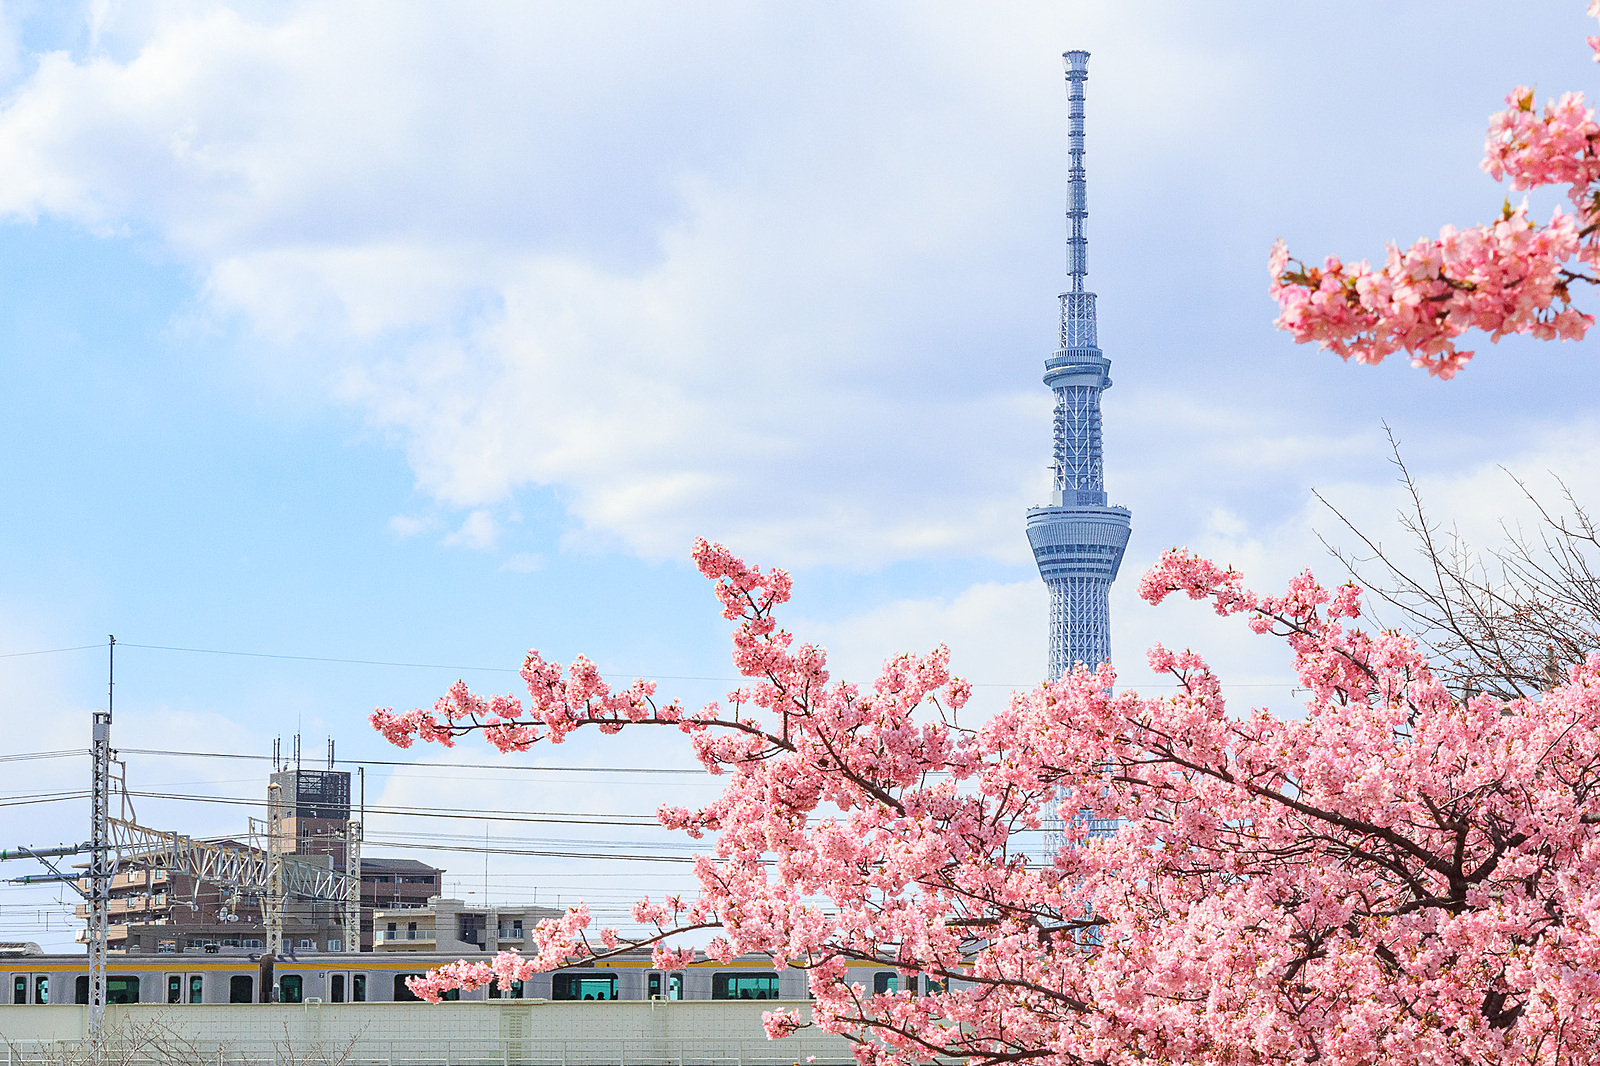 【カメライベント】都内(旧中川)の河津桜を撮りに行こう🌸